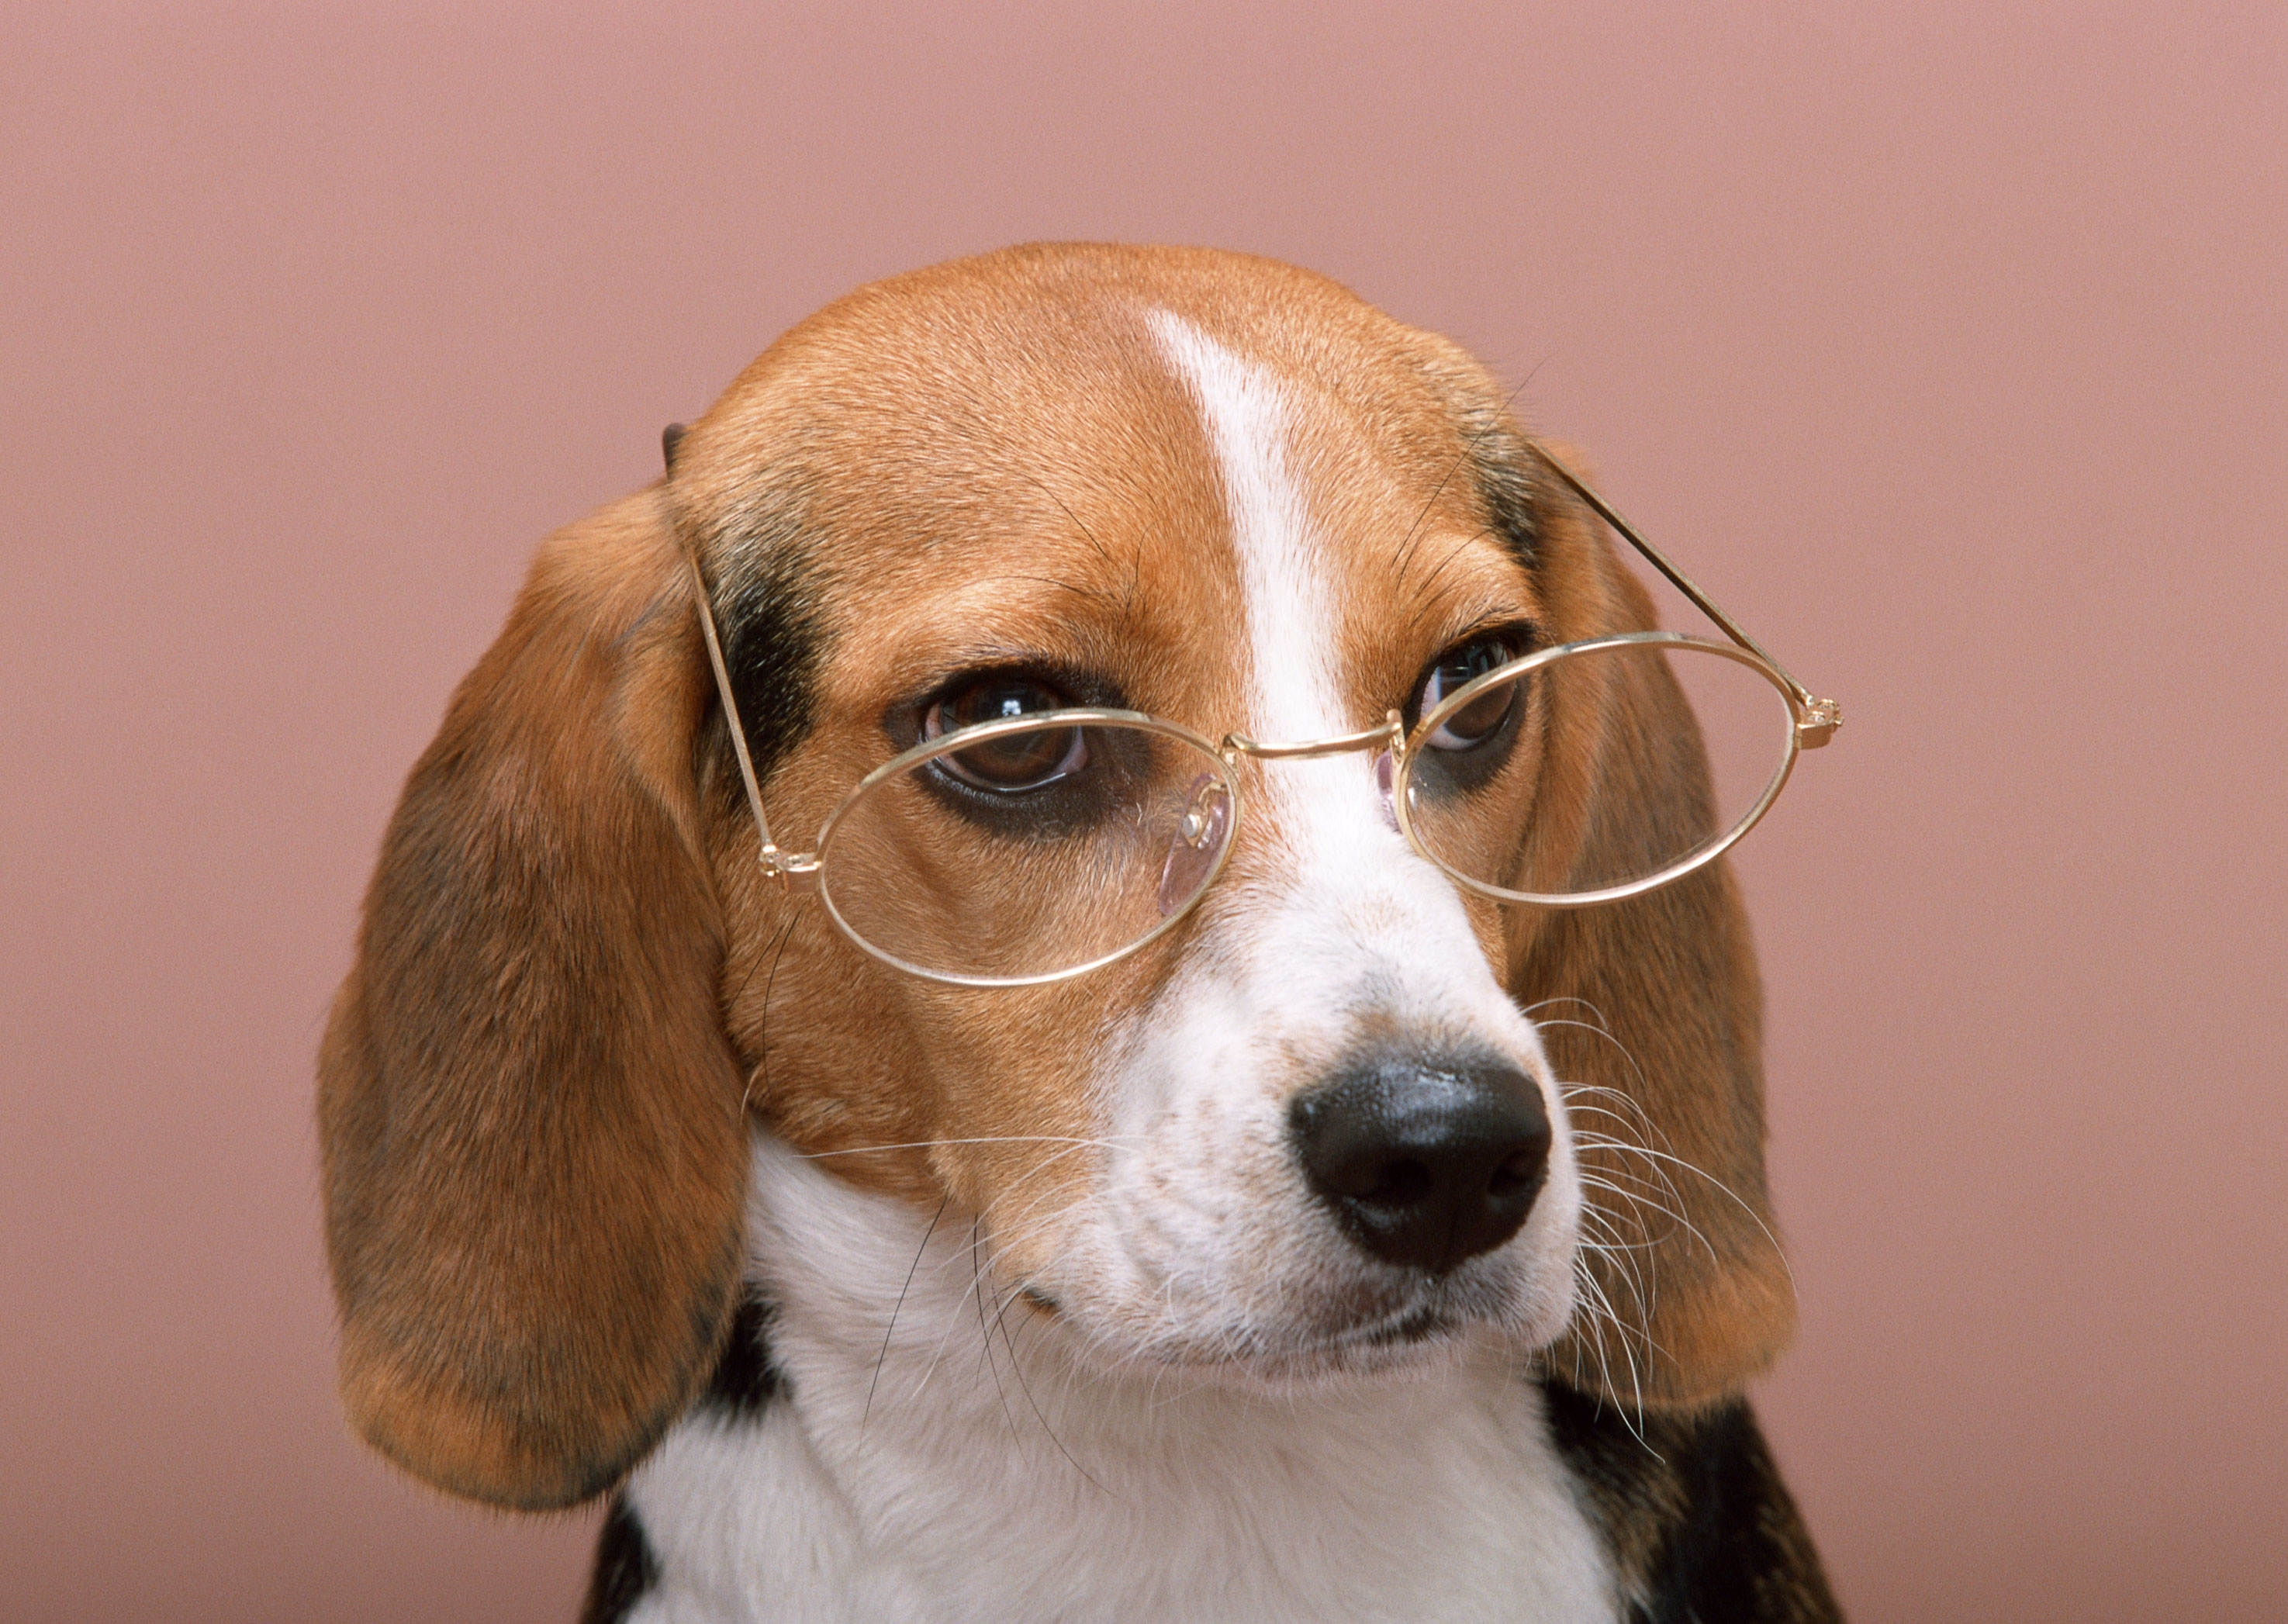 115371 descargar imagen animales, perro, gafas, fondo rosa, fondo rosado: fondos de pantalla y protectores de pantalla gratis